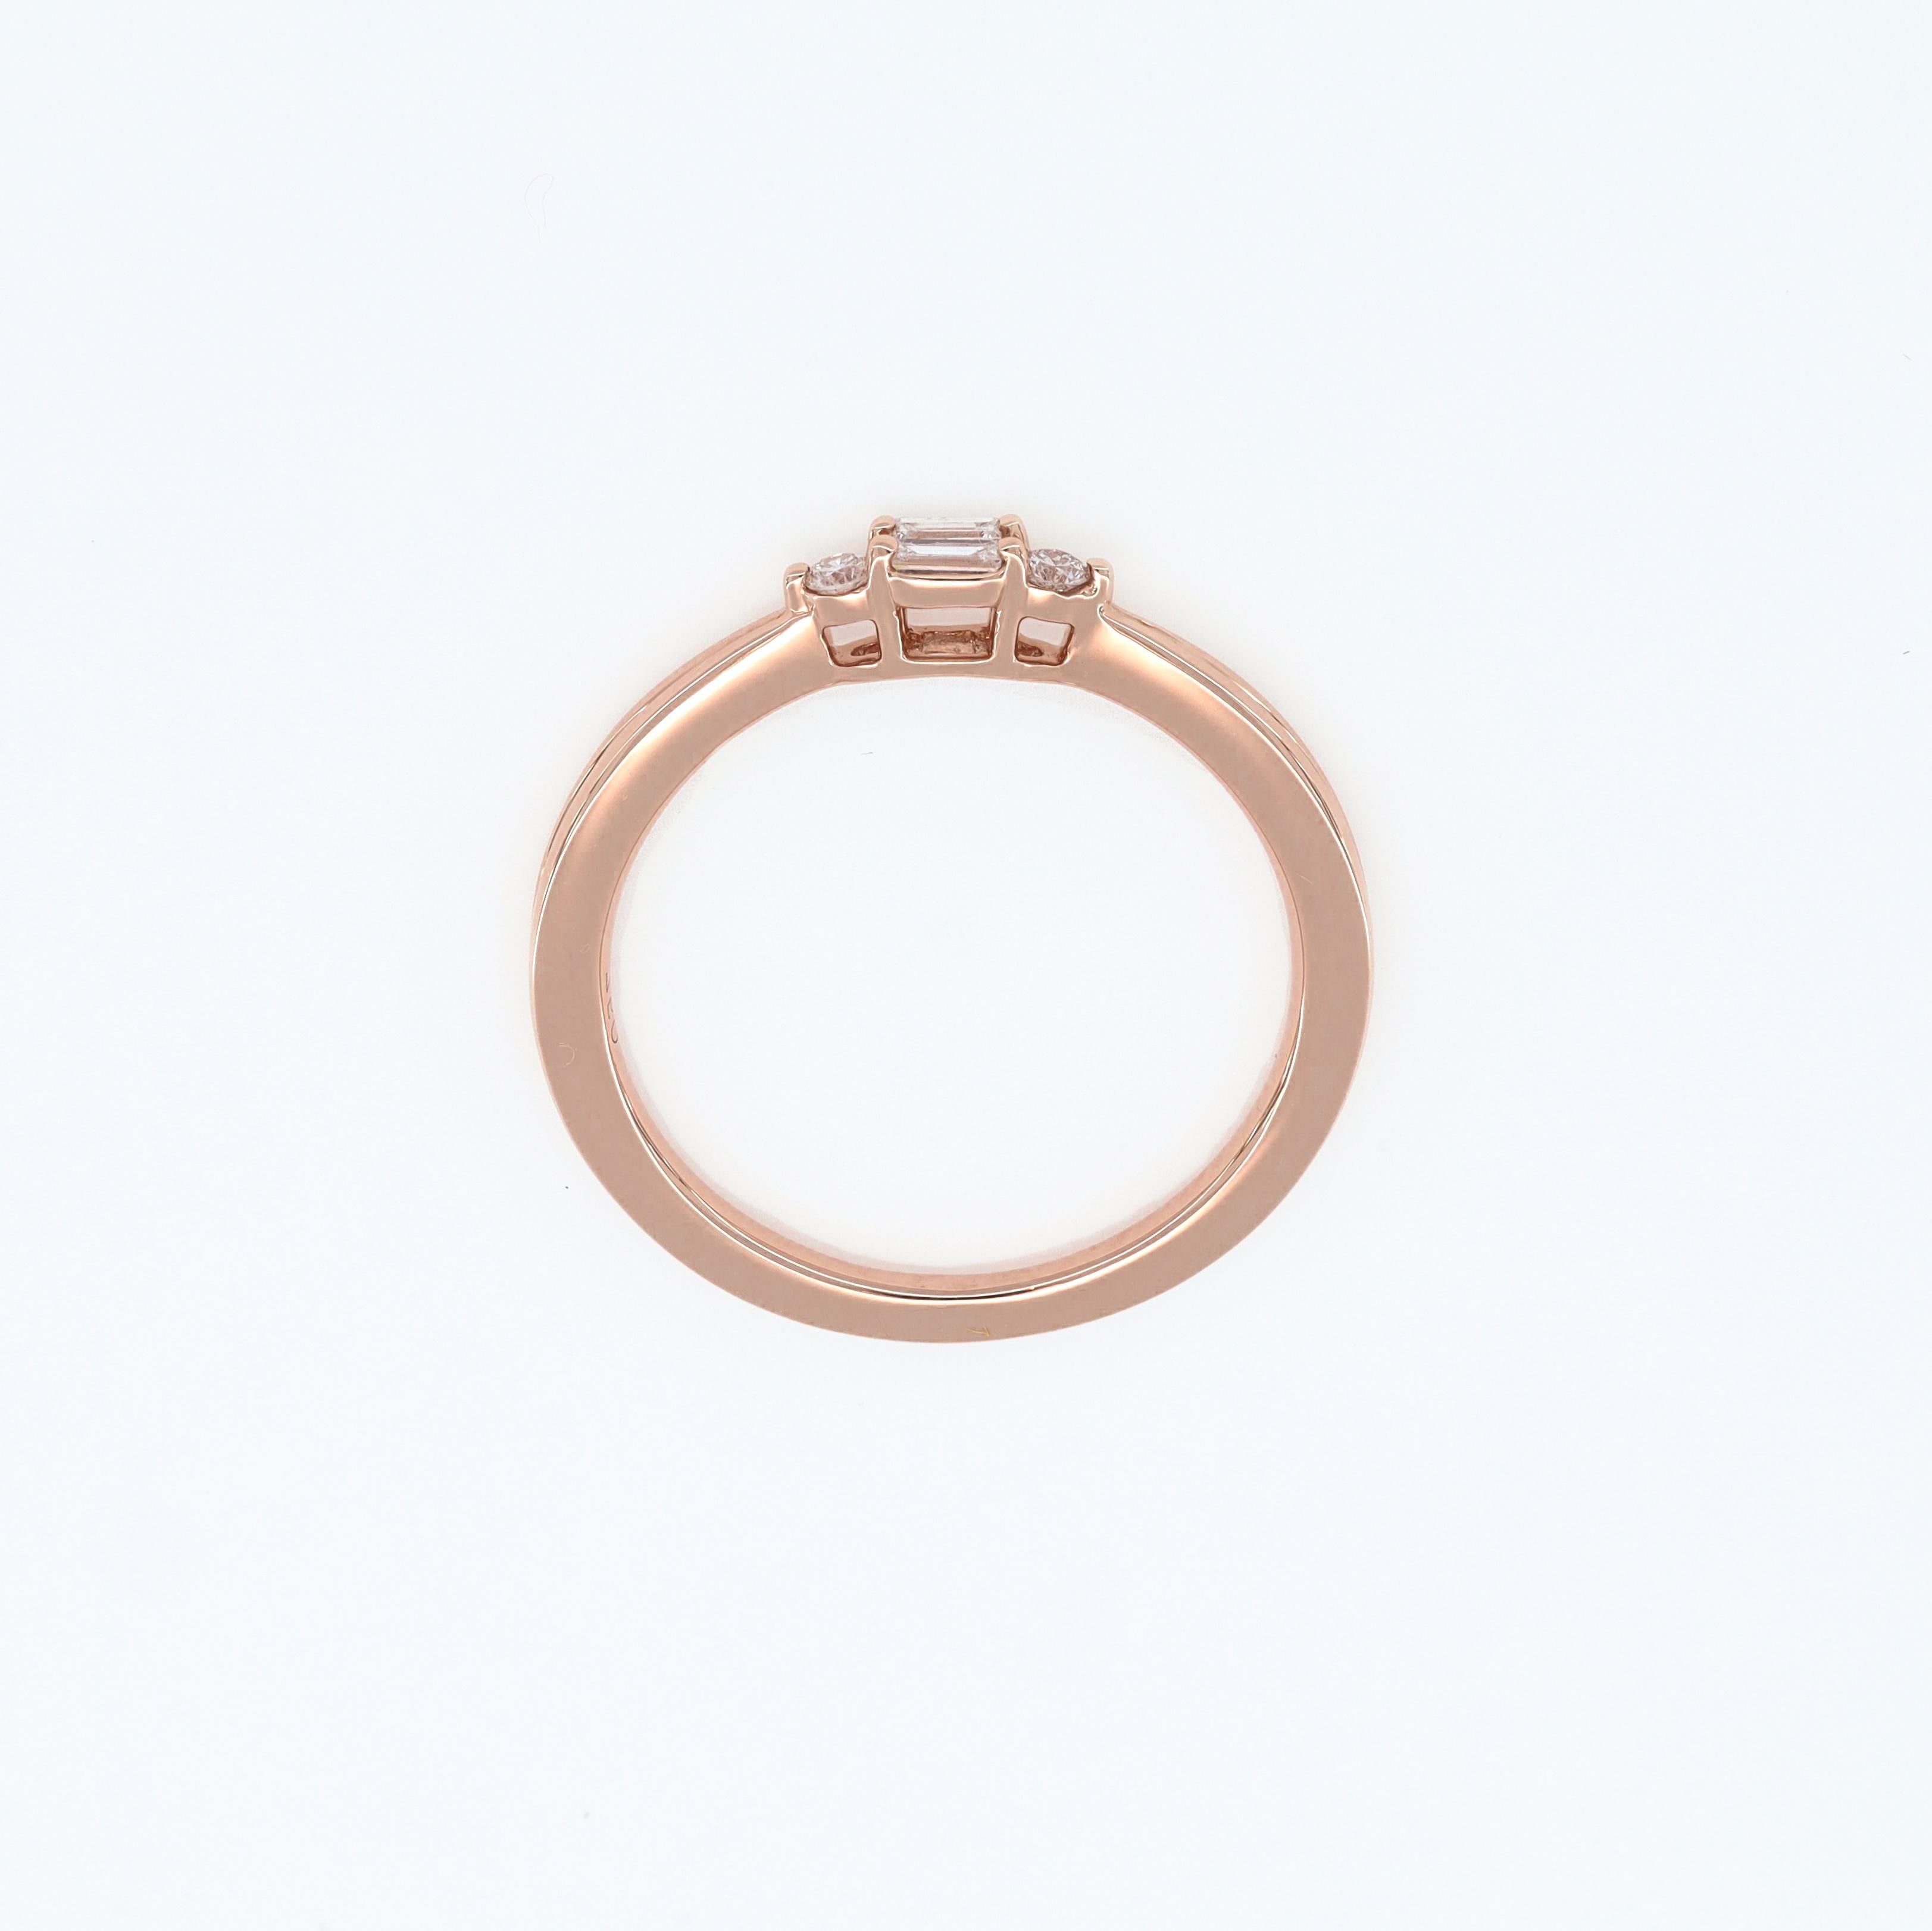 Modern Natural Diamond Ring 0.11 Carats 18 Karat Rose Gold Engagement Ring  For Sale